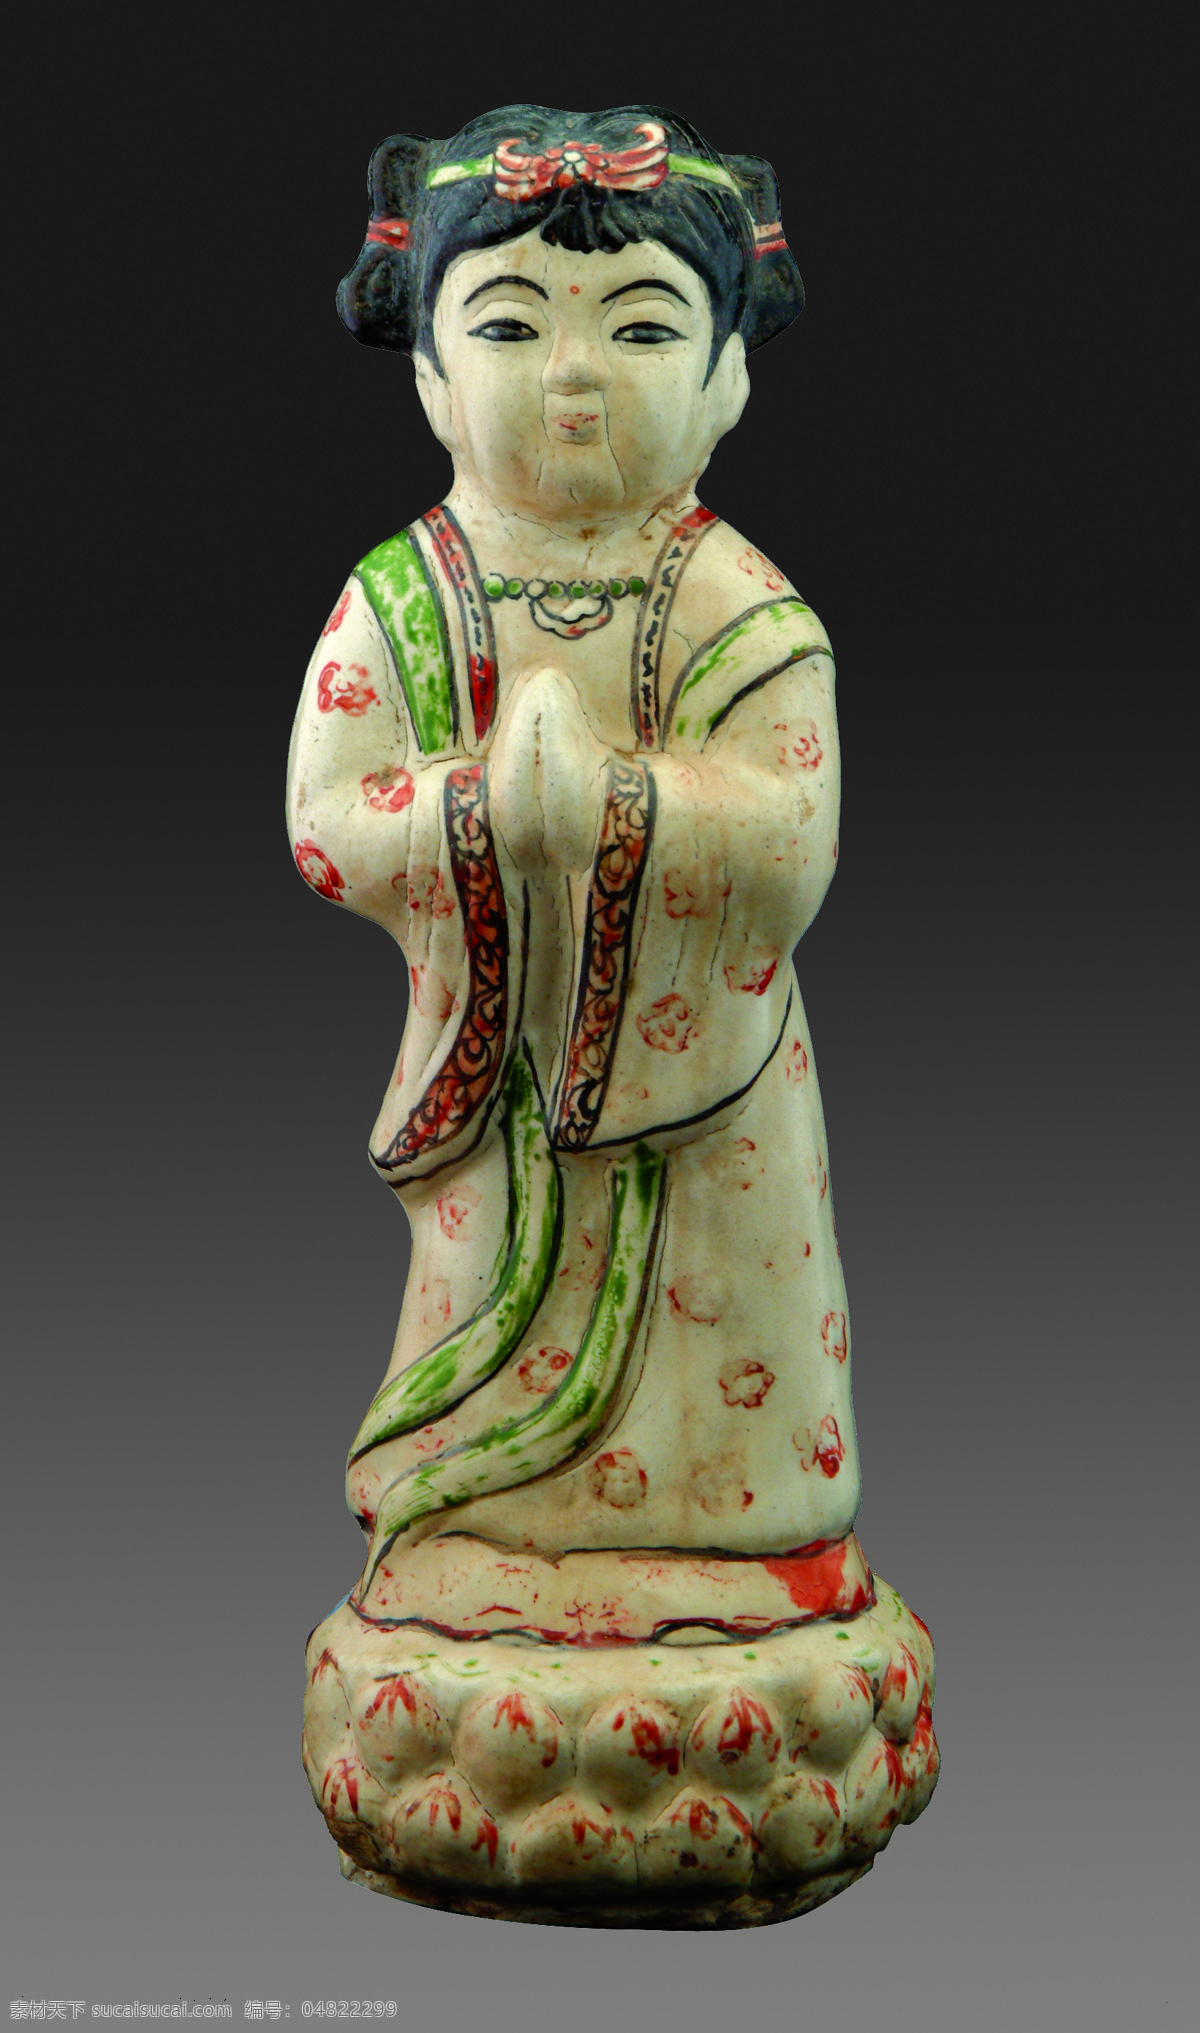 磁 州 窑 红 绿 彩 童子 塑像 童子塑像 隋唐 大运河 出土文物 文物 传统文化 文化艺术